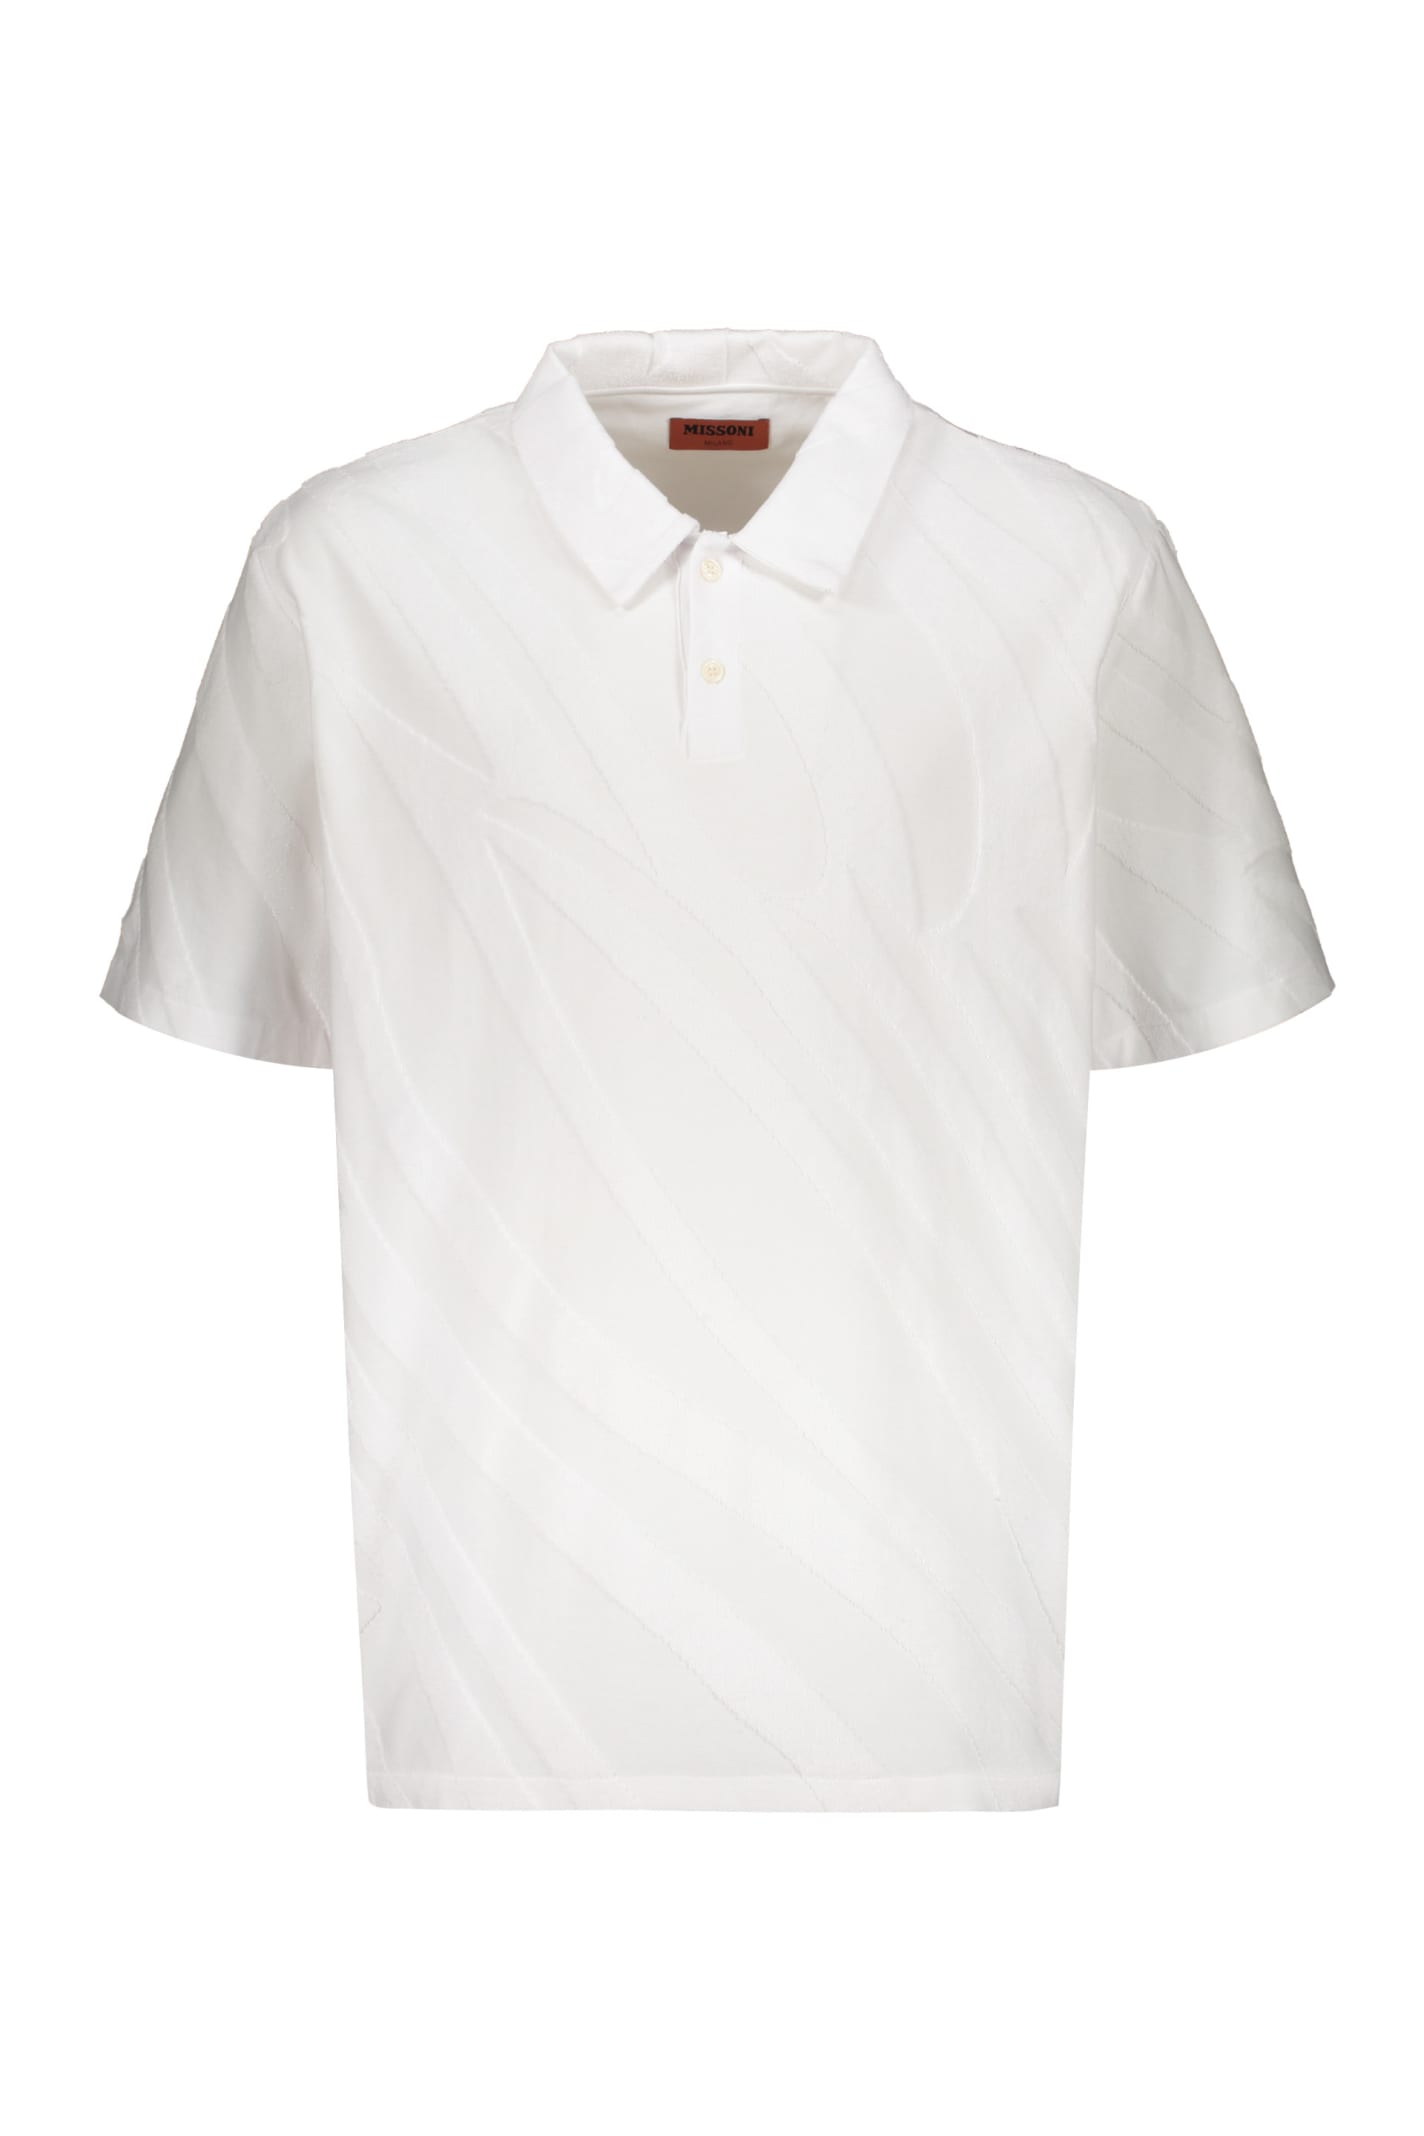 Missoni Cotton Polo Shirt In White